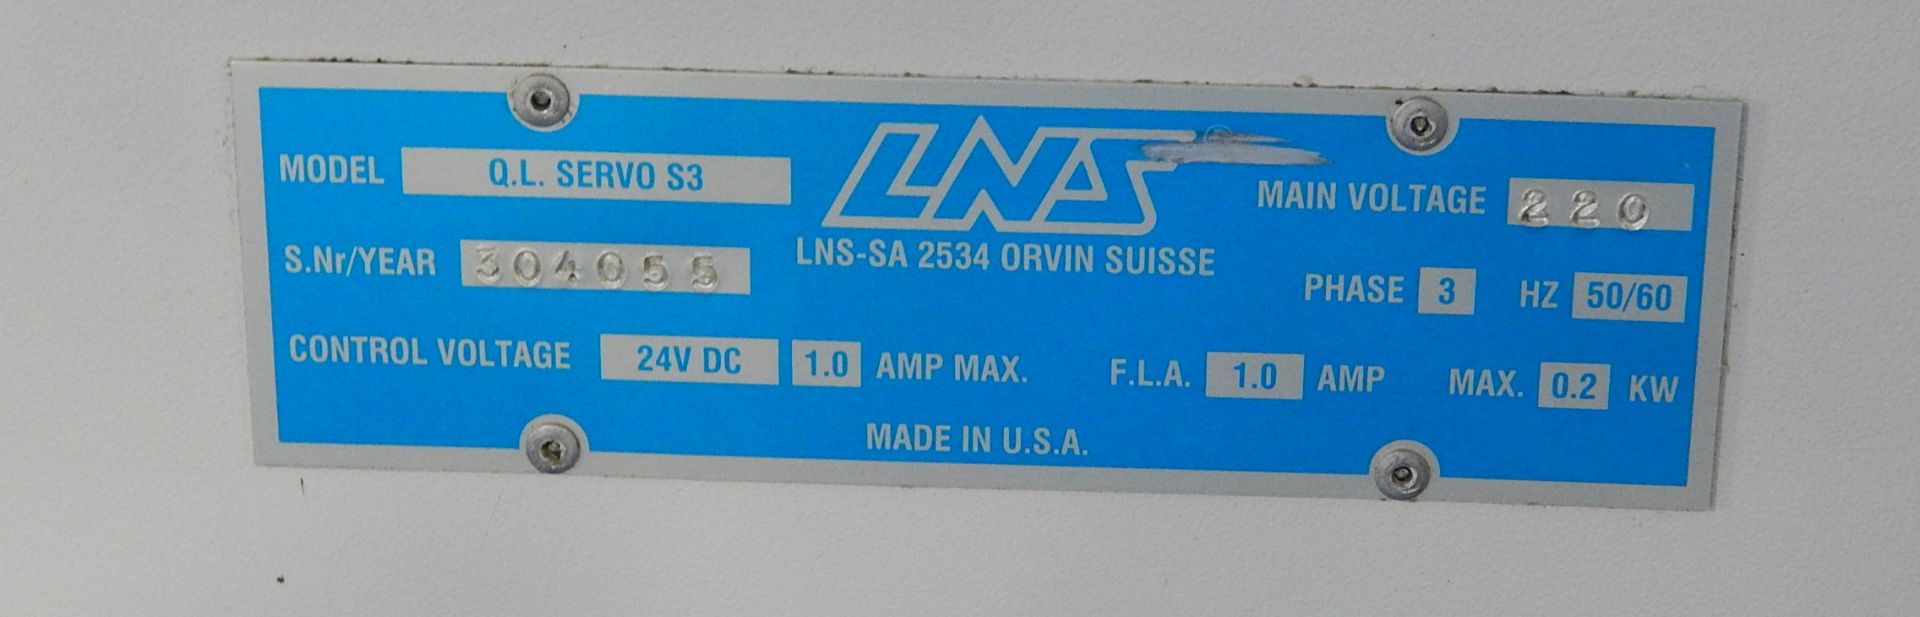 LNS Model Quick Load Servo 53 Bar Feed, s/n 304055 - Image 6 of 6